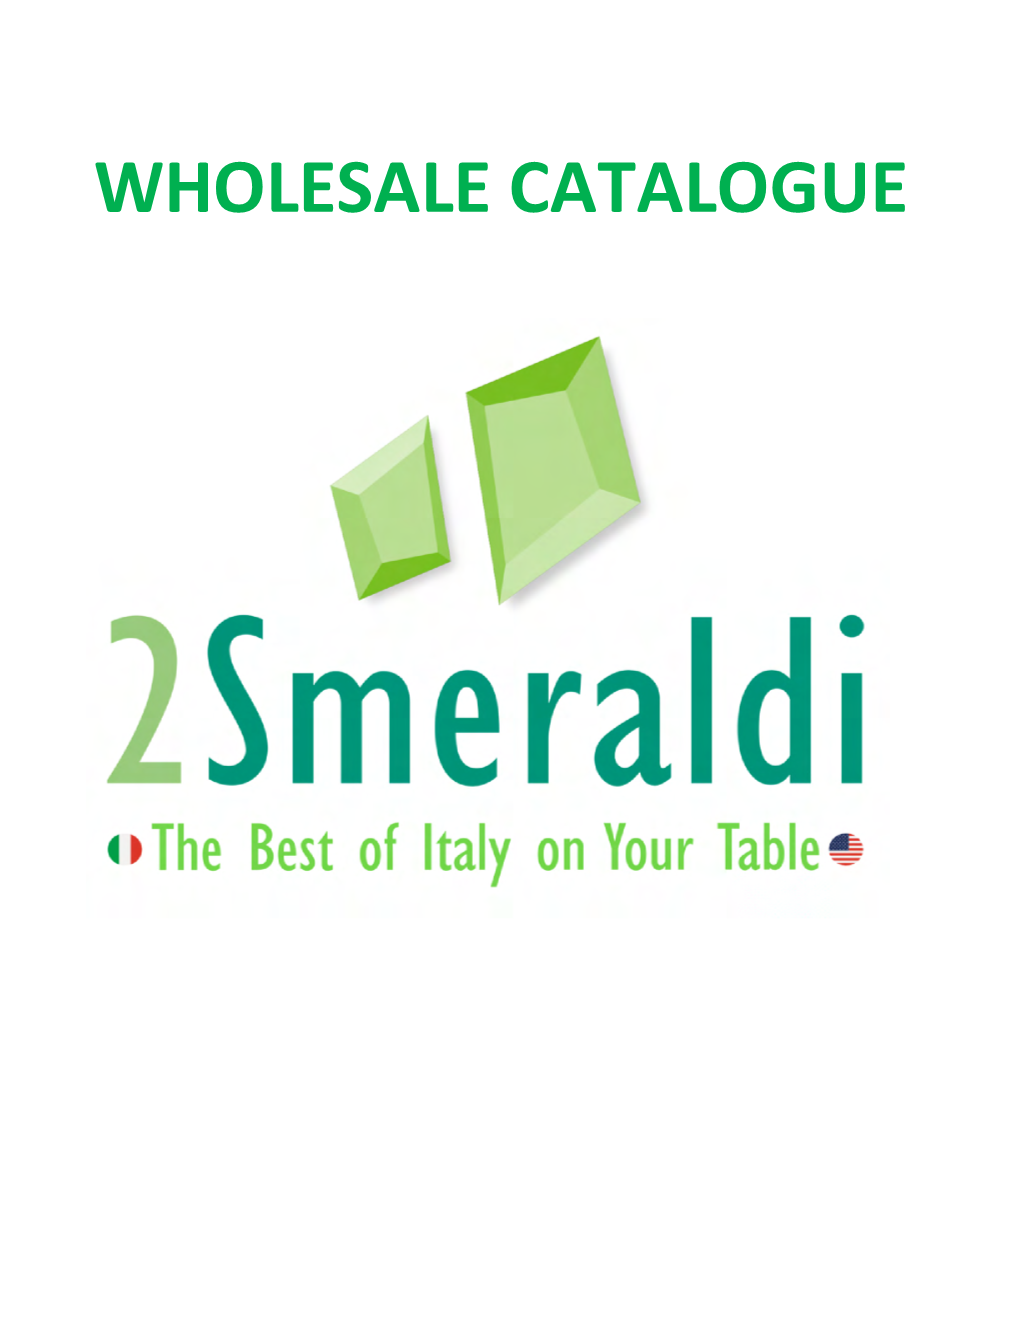 Web Product List APR 2021 2 Smeraldi R.Xlsx 2